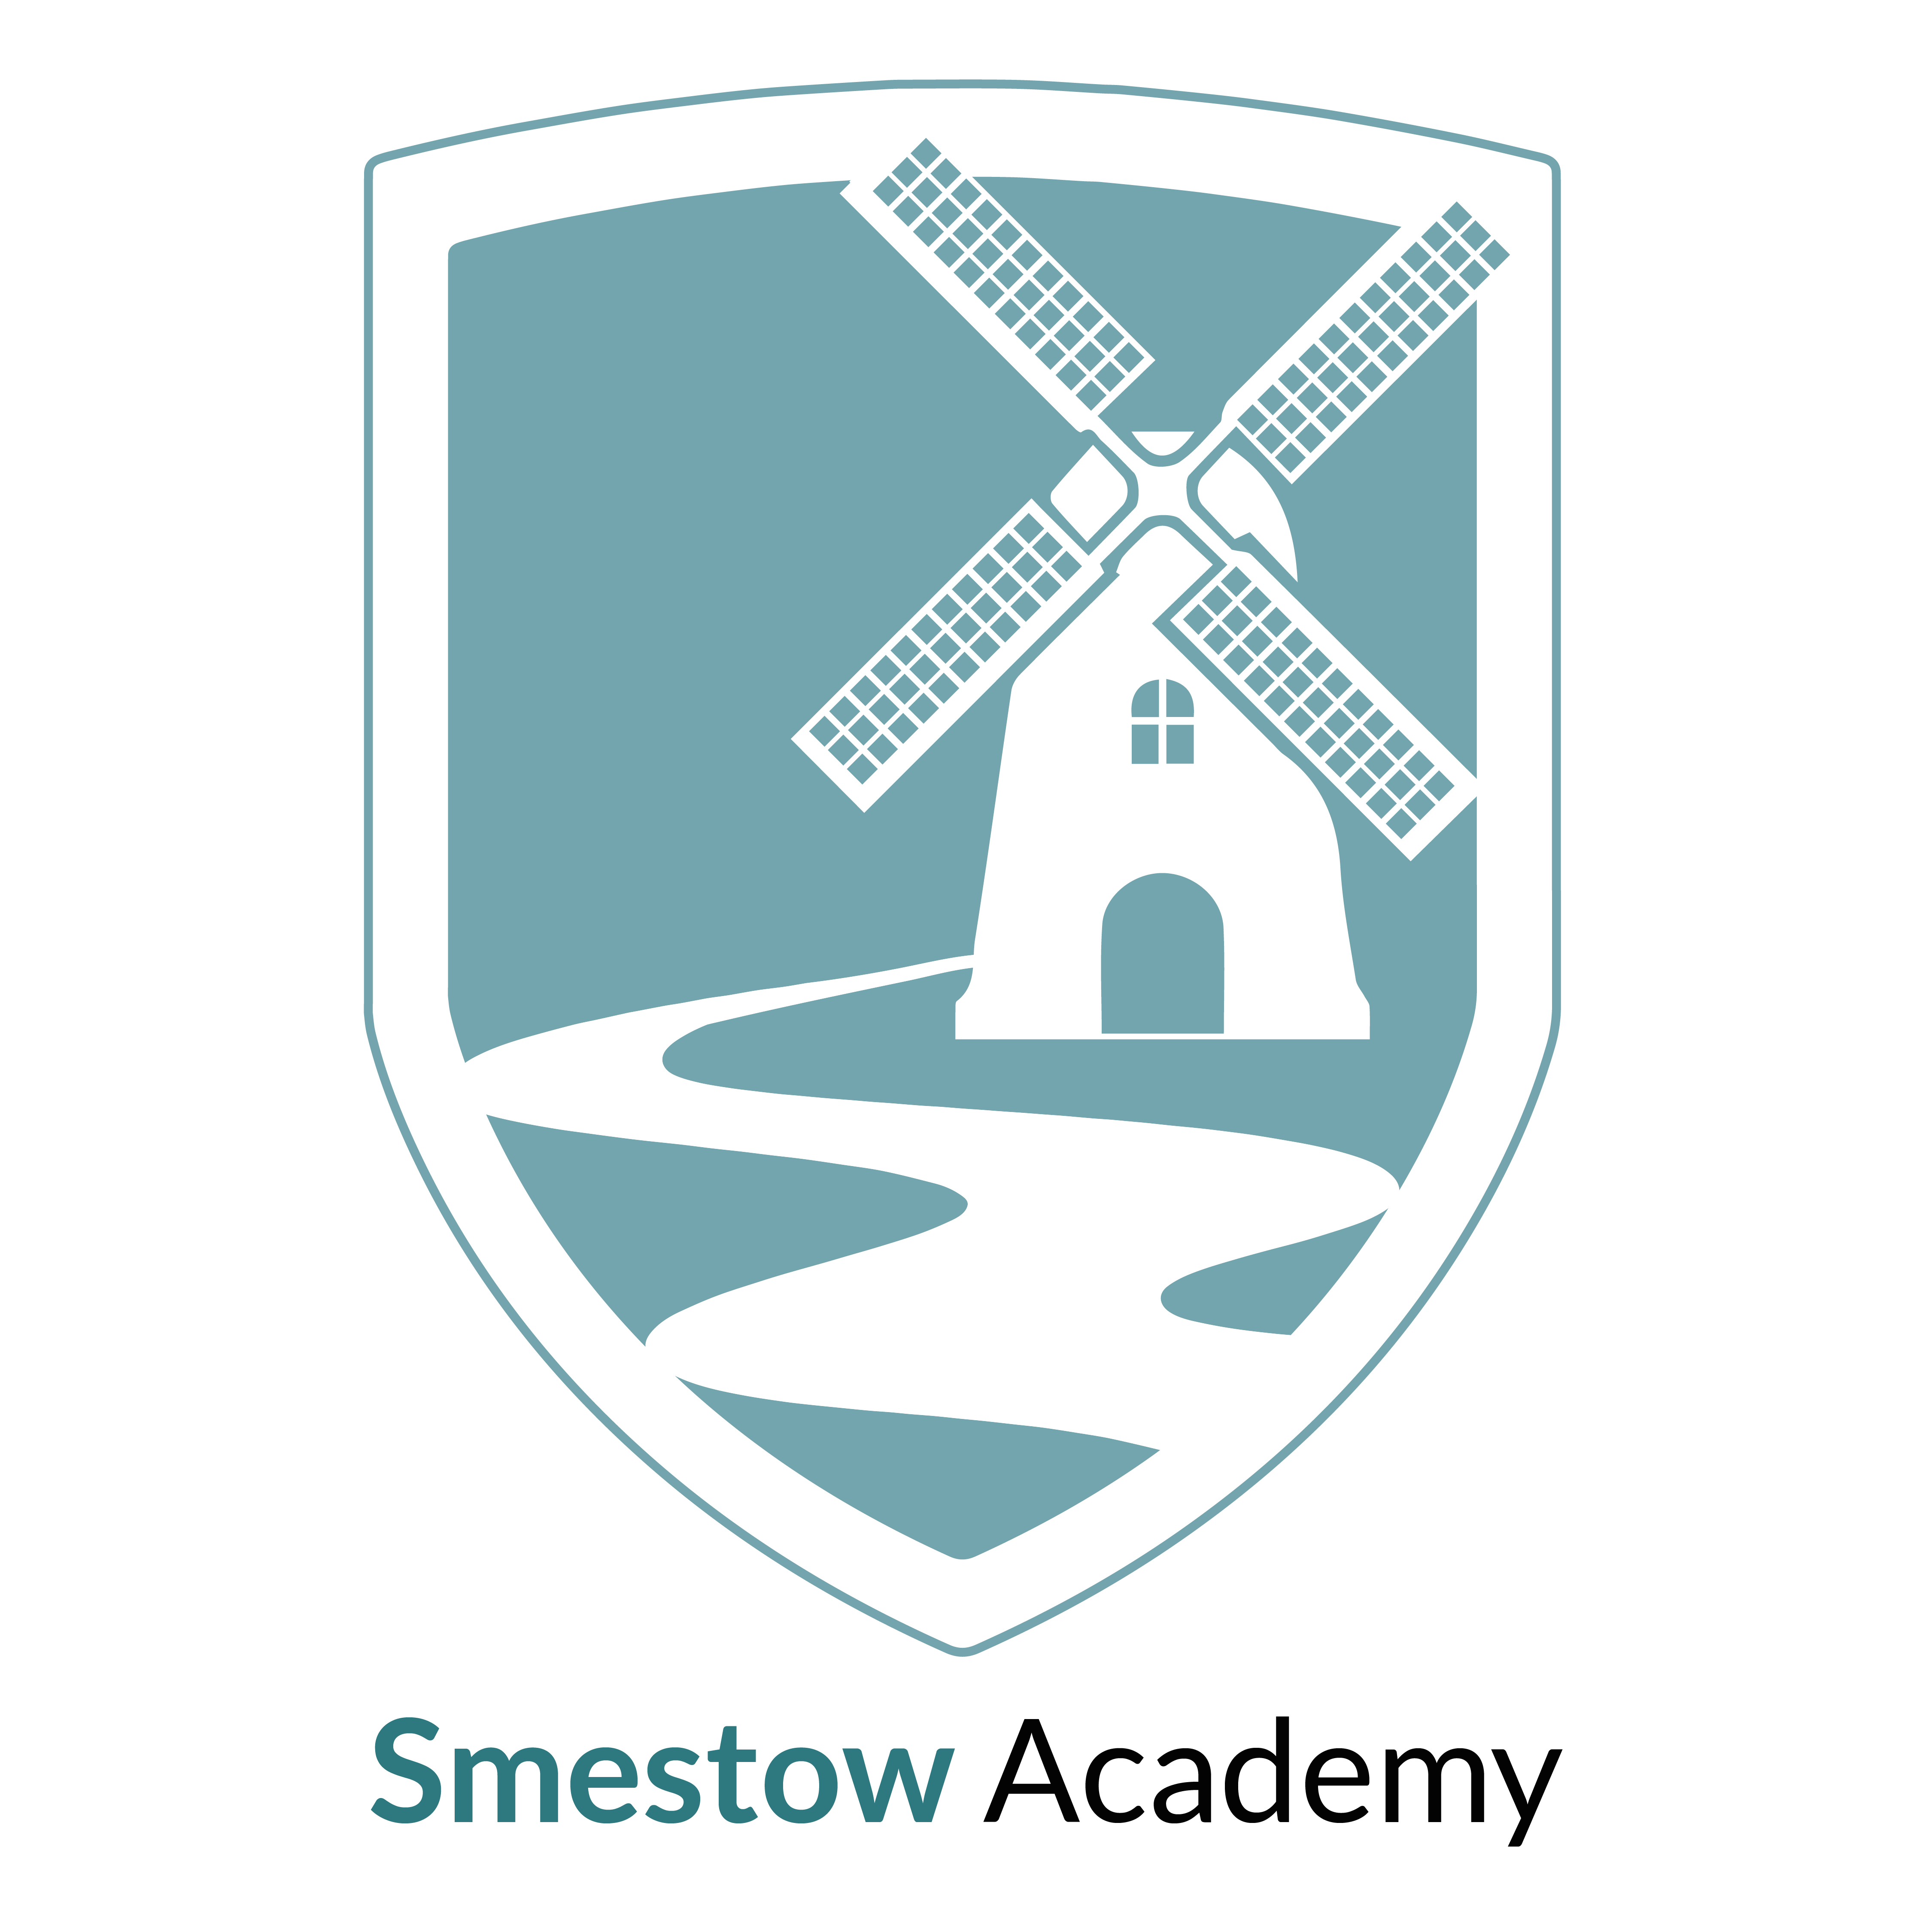 Smestow Academy